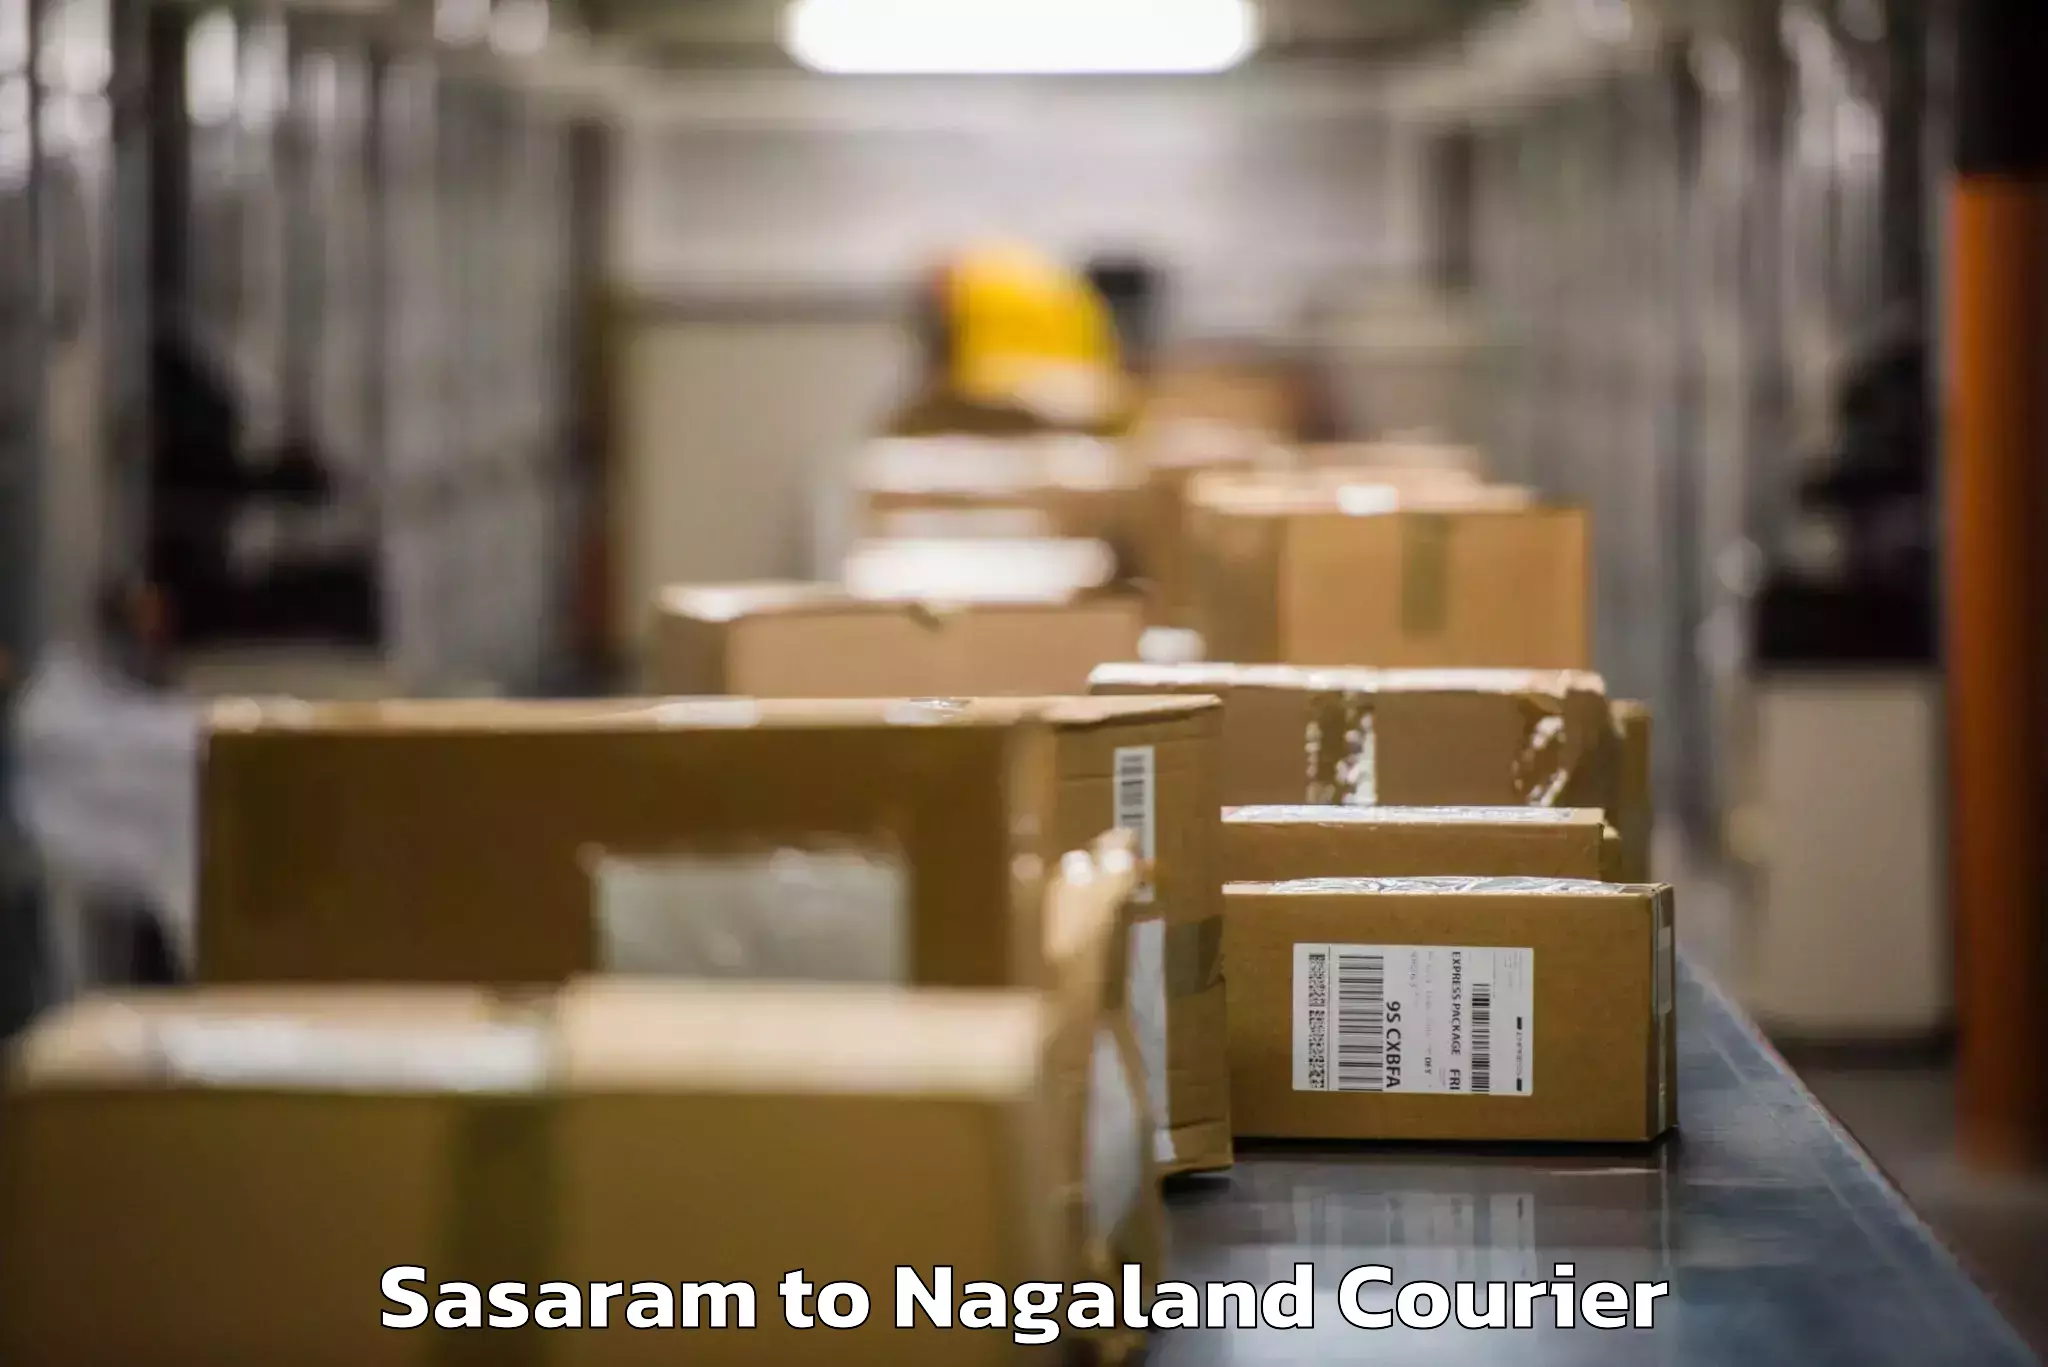 Baggage transport network Sasaram to Nagaland